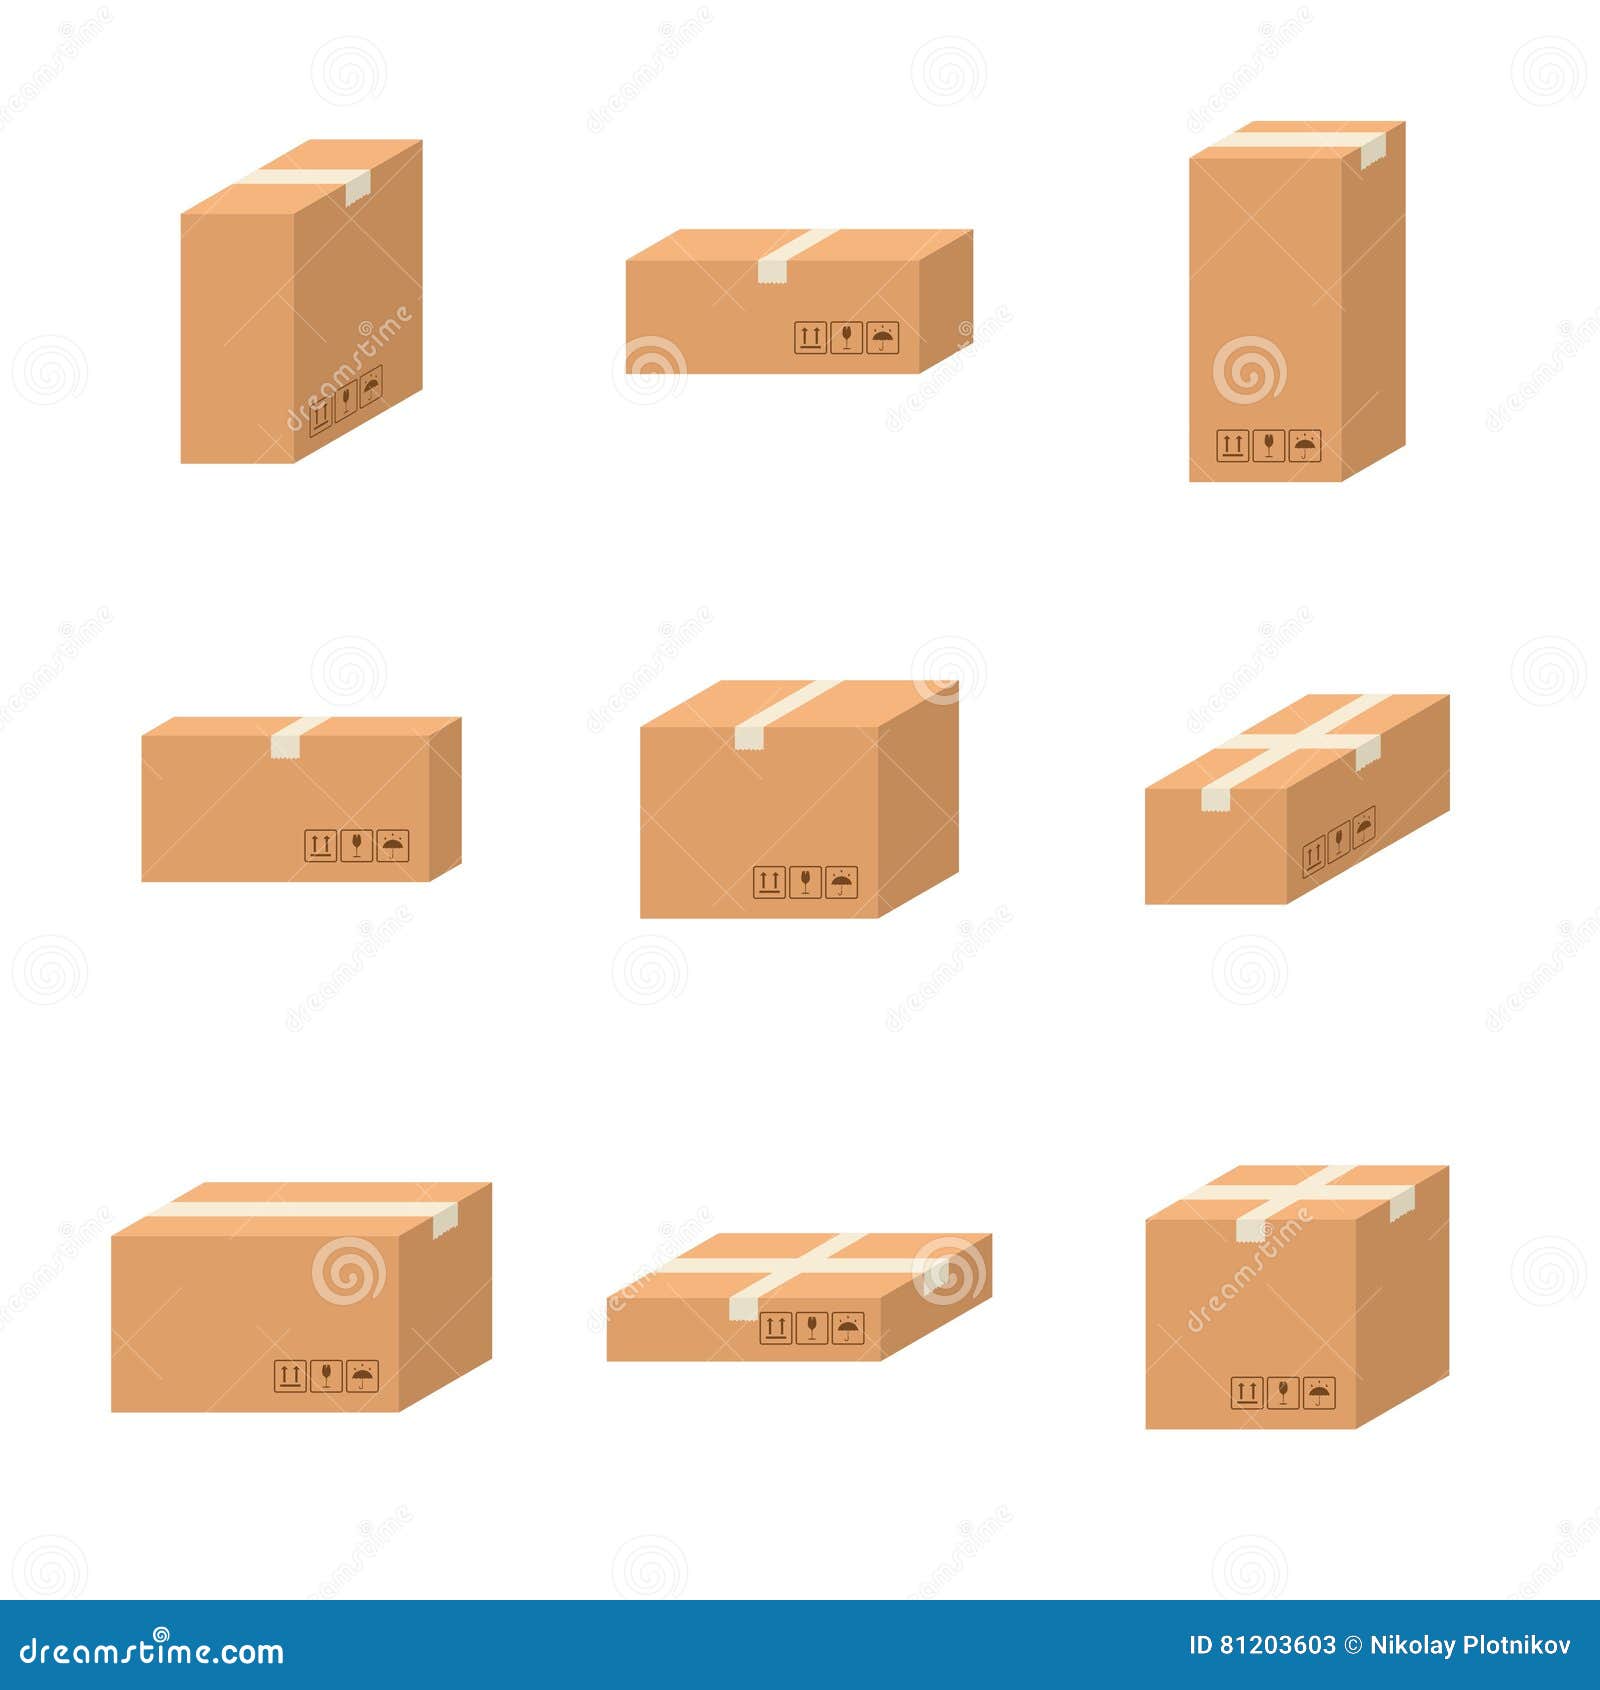 Cartons - Stock Sizes